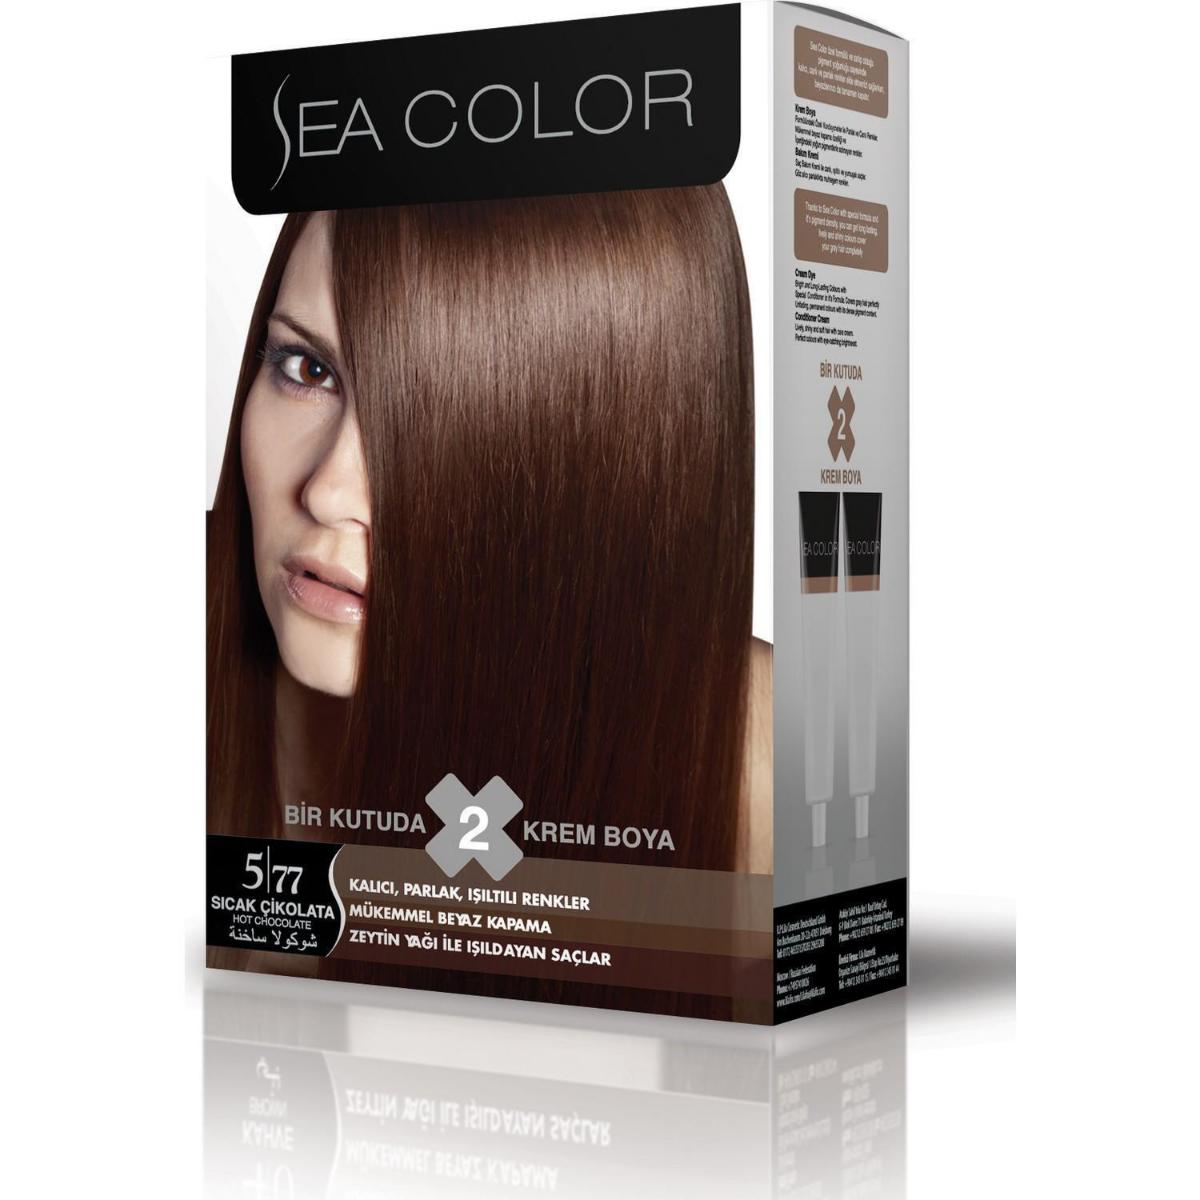 Sea Color 5.77 Sıcak Çikolata Krem Saç Boyası